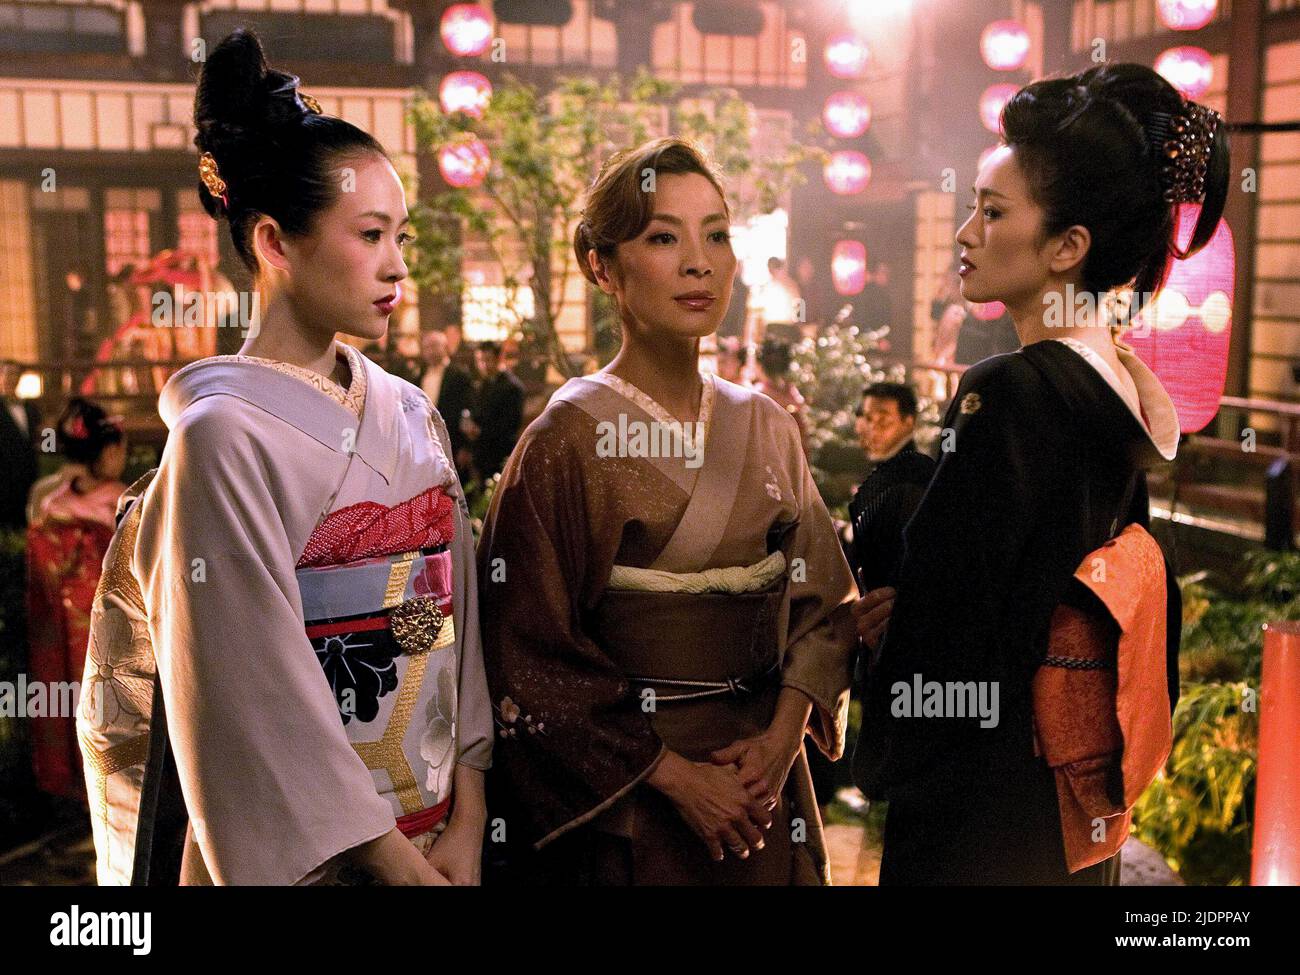 ZHANG,YEOH,LI, MEMOIRS OF A GEISHA, 2005, Stock Photo